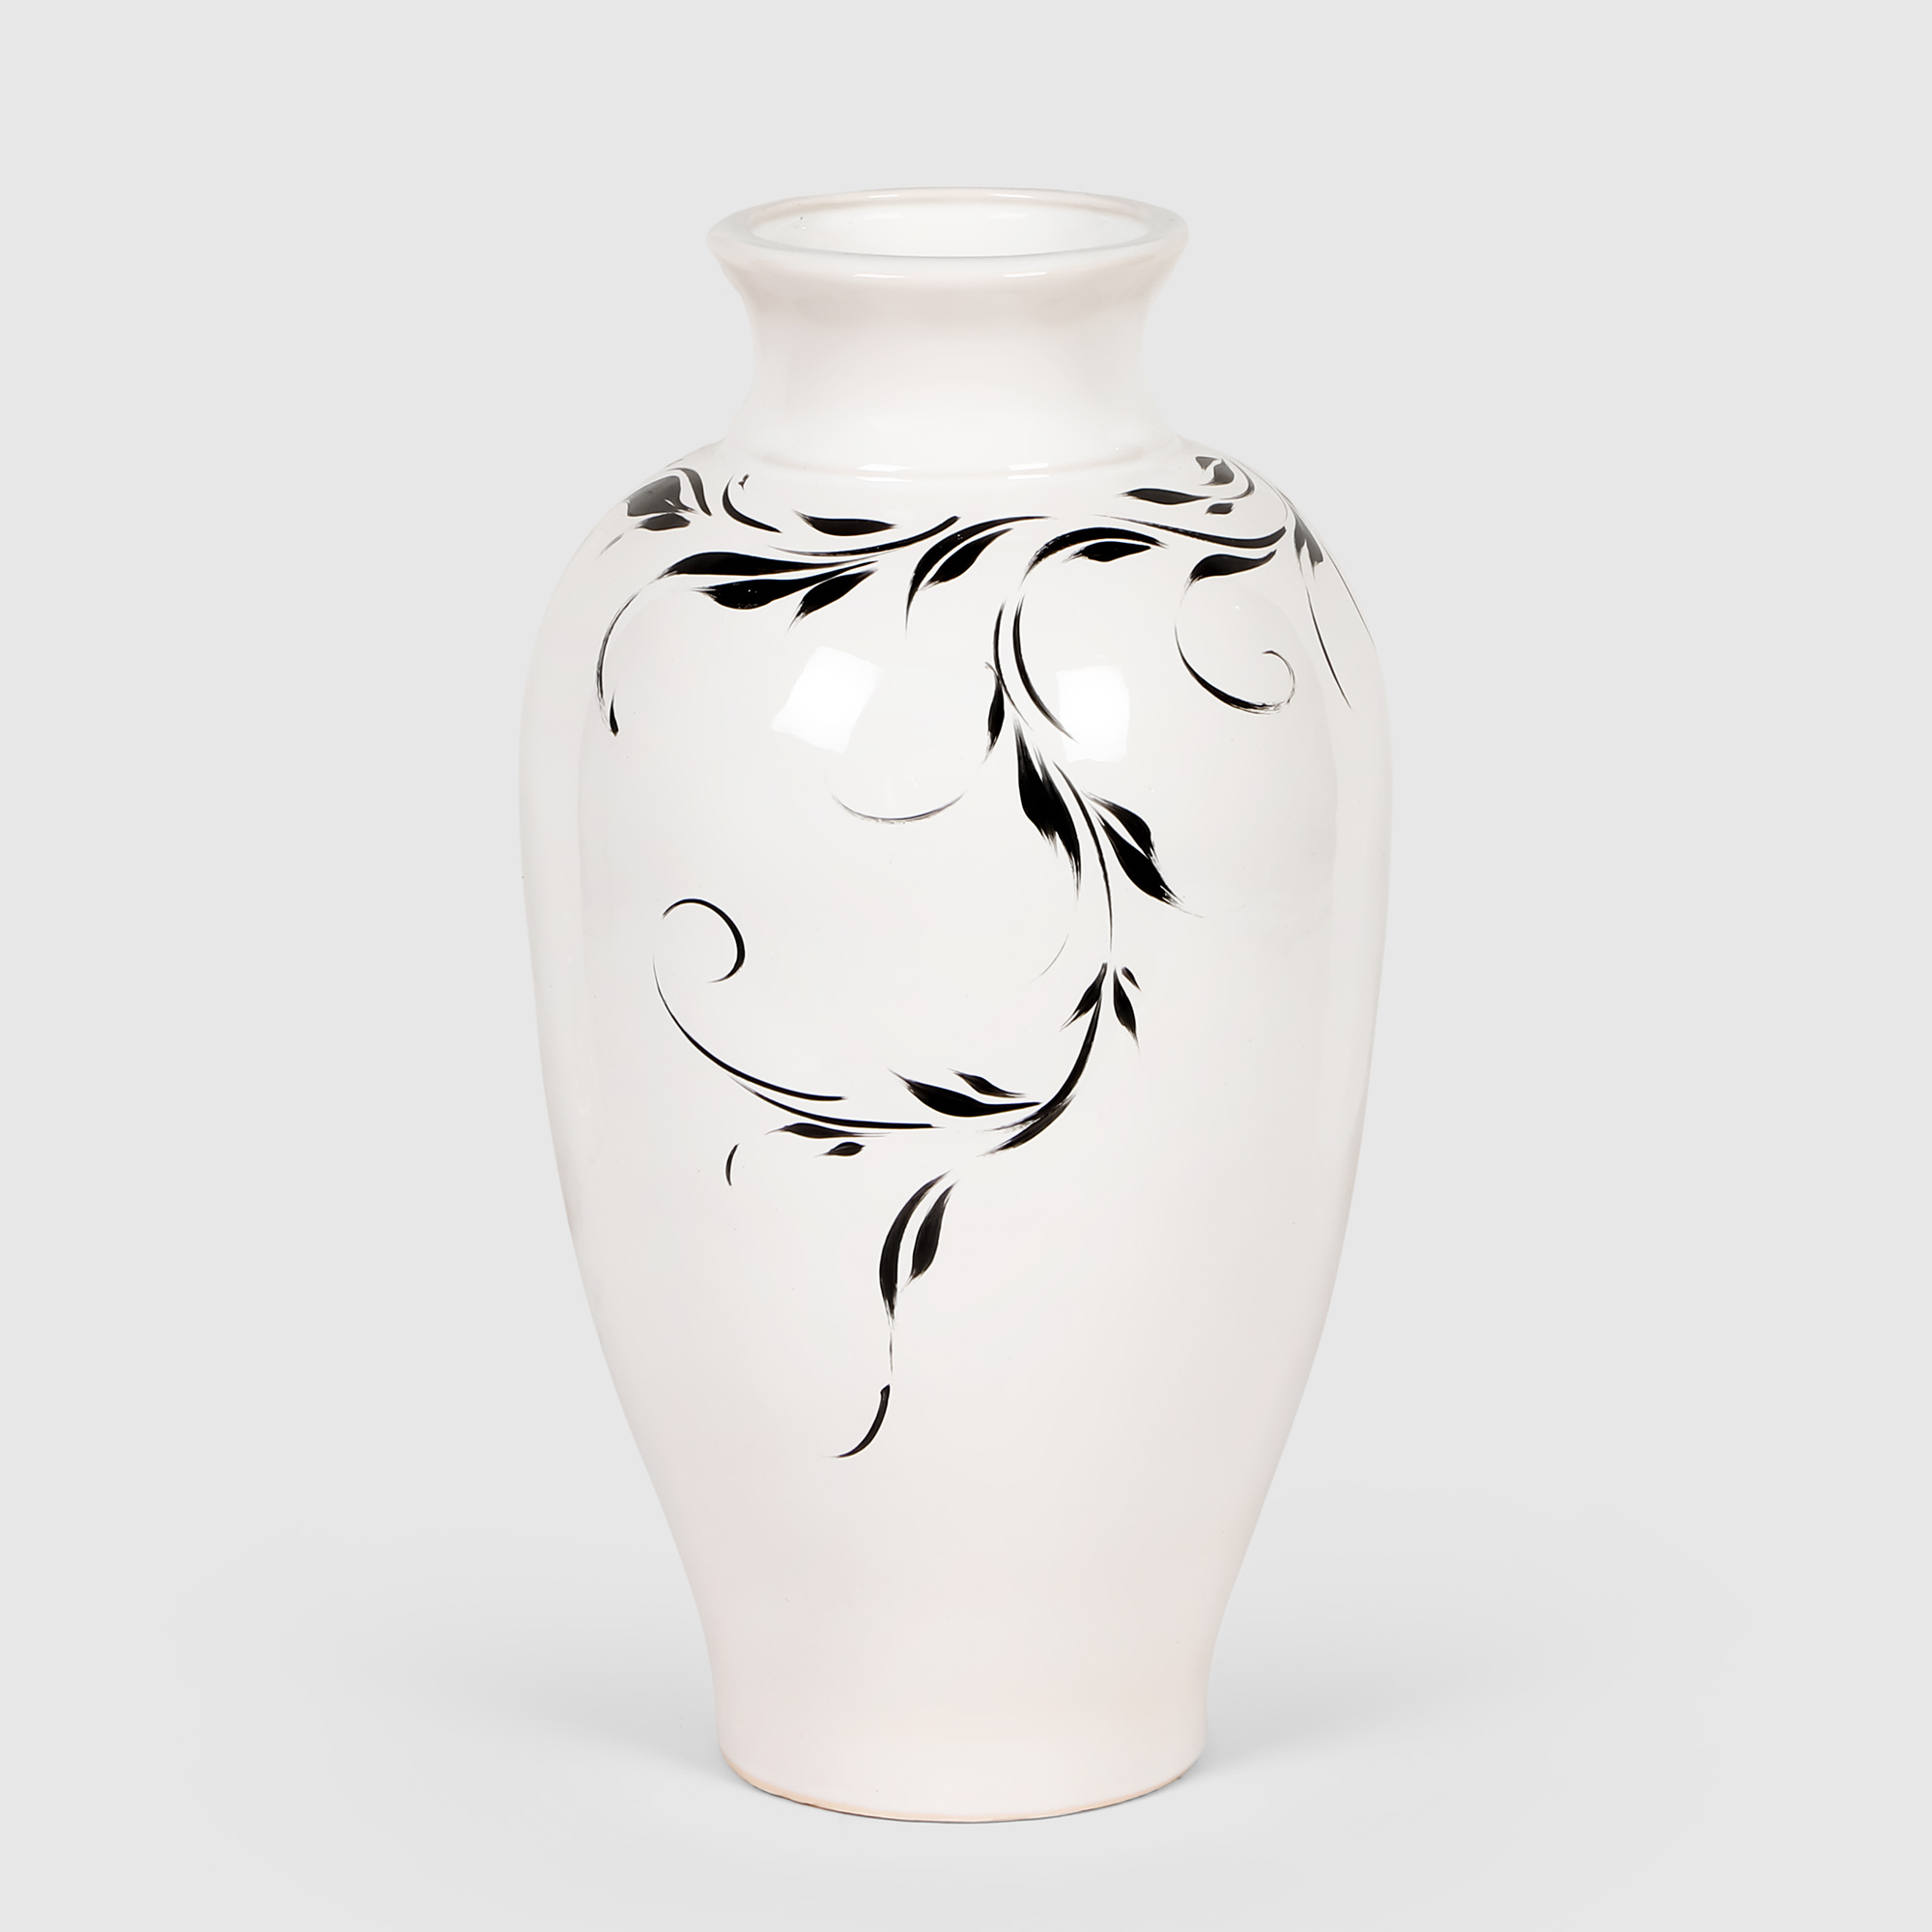 Керамическая ваза Porc-ceramic Муза с росписью 32х18 см, цвет белый